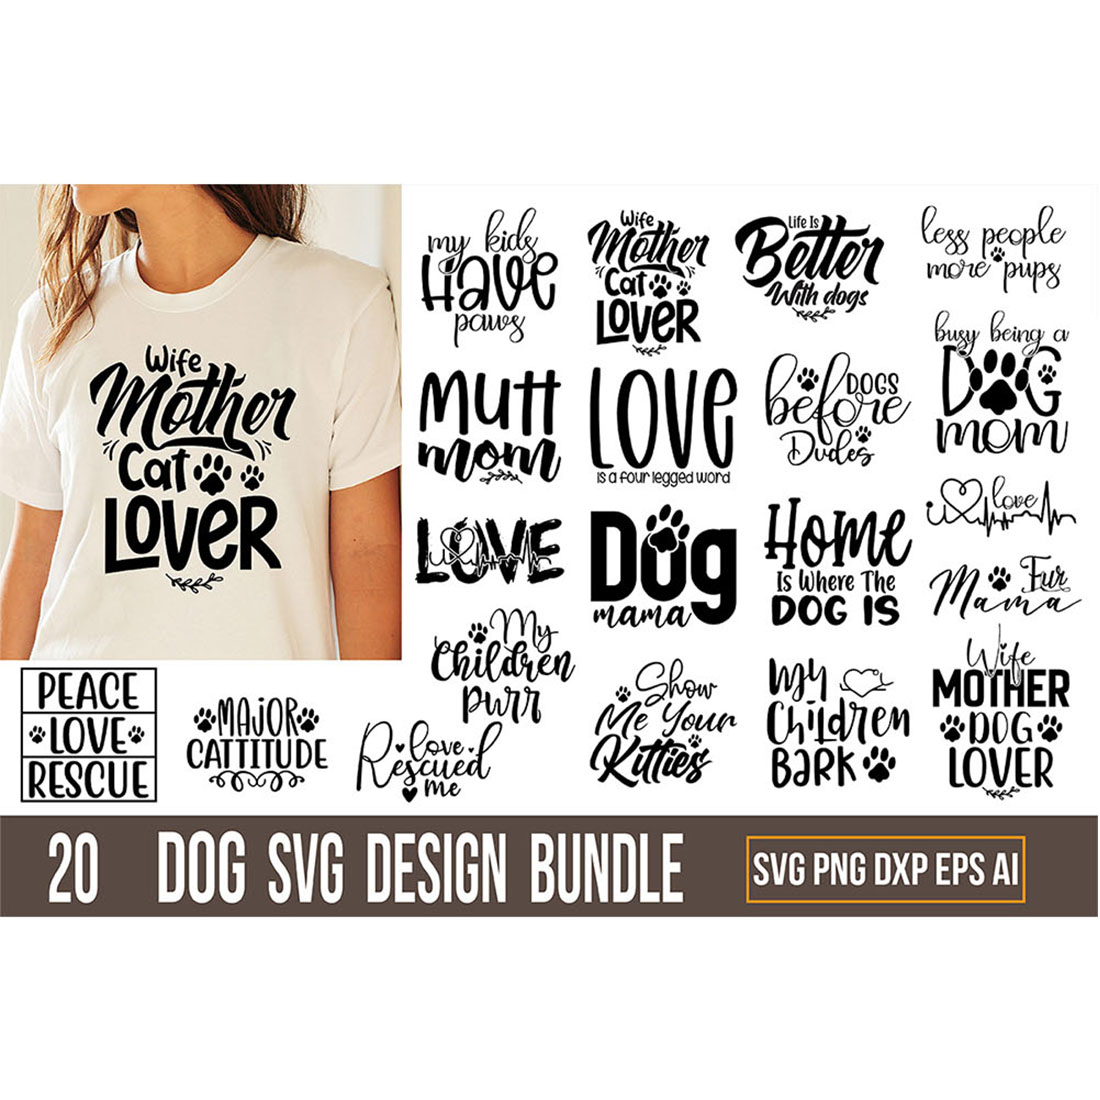 Dog T-shirt Design SVG Bundle cover image.